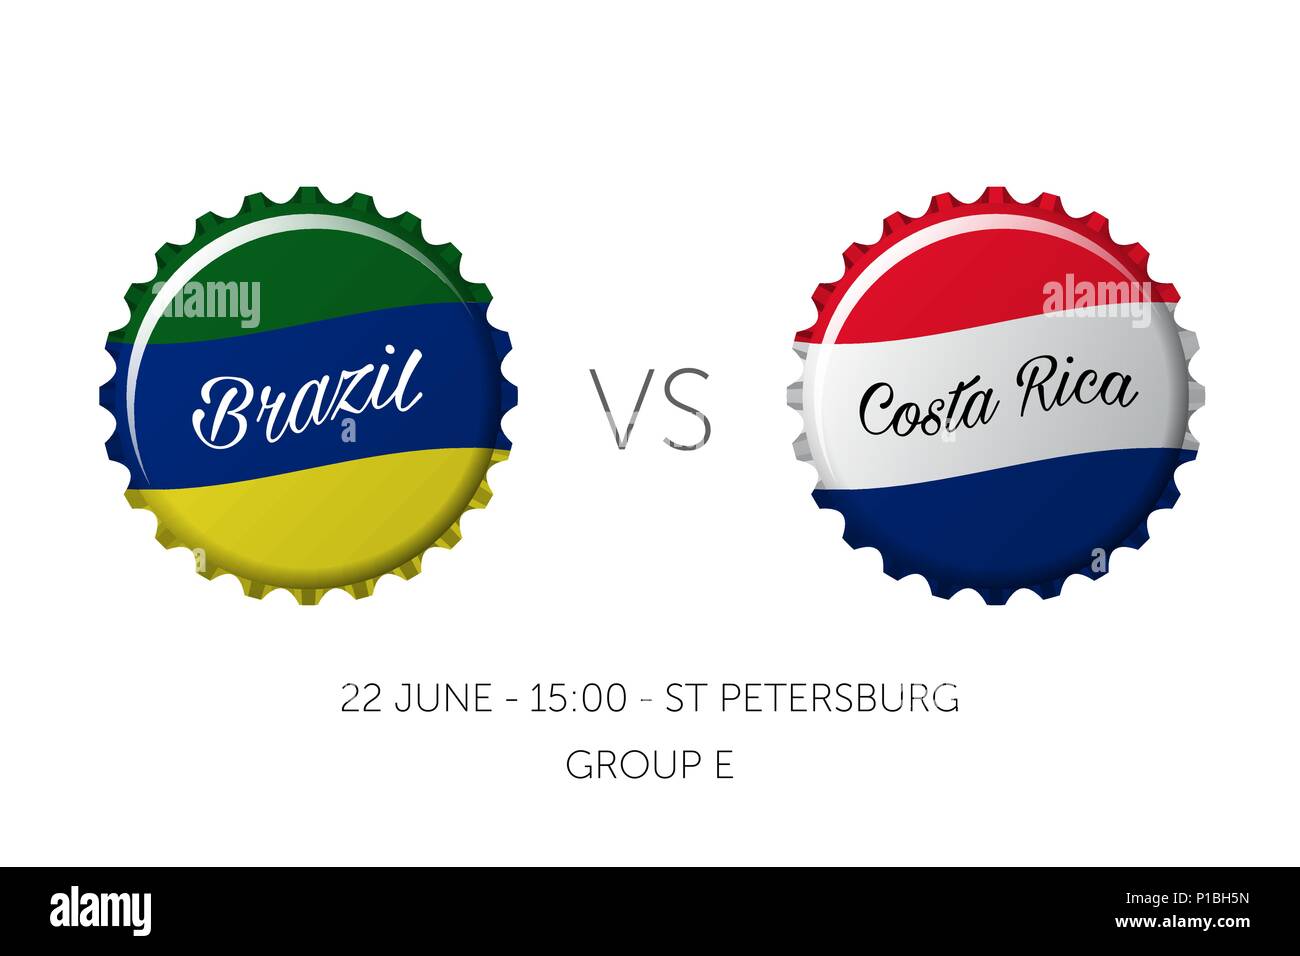 Soccer championship - Brazil VS Costa Rica - 22 June Stock Vector